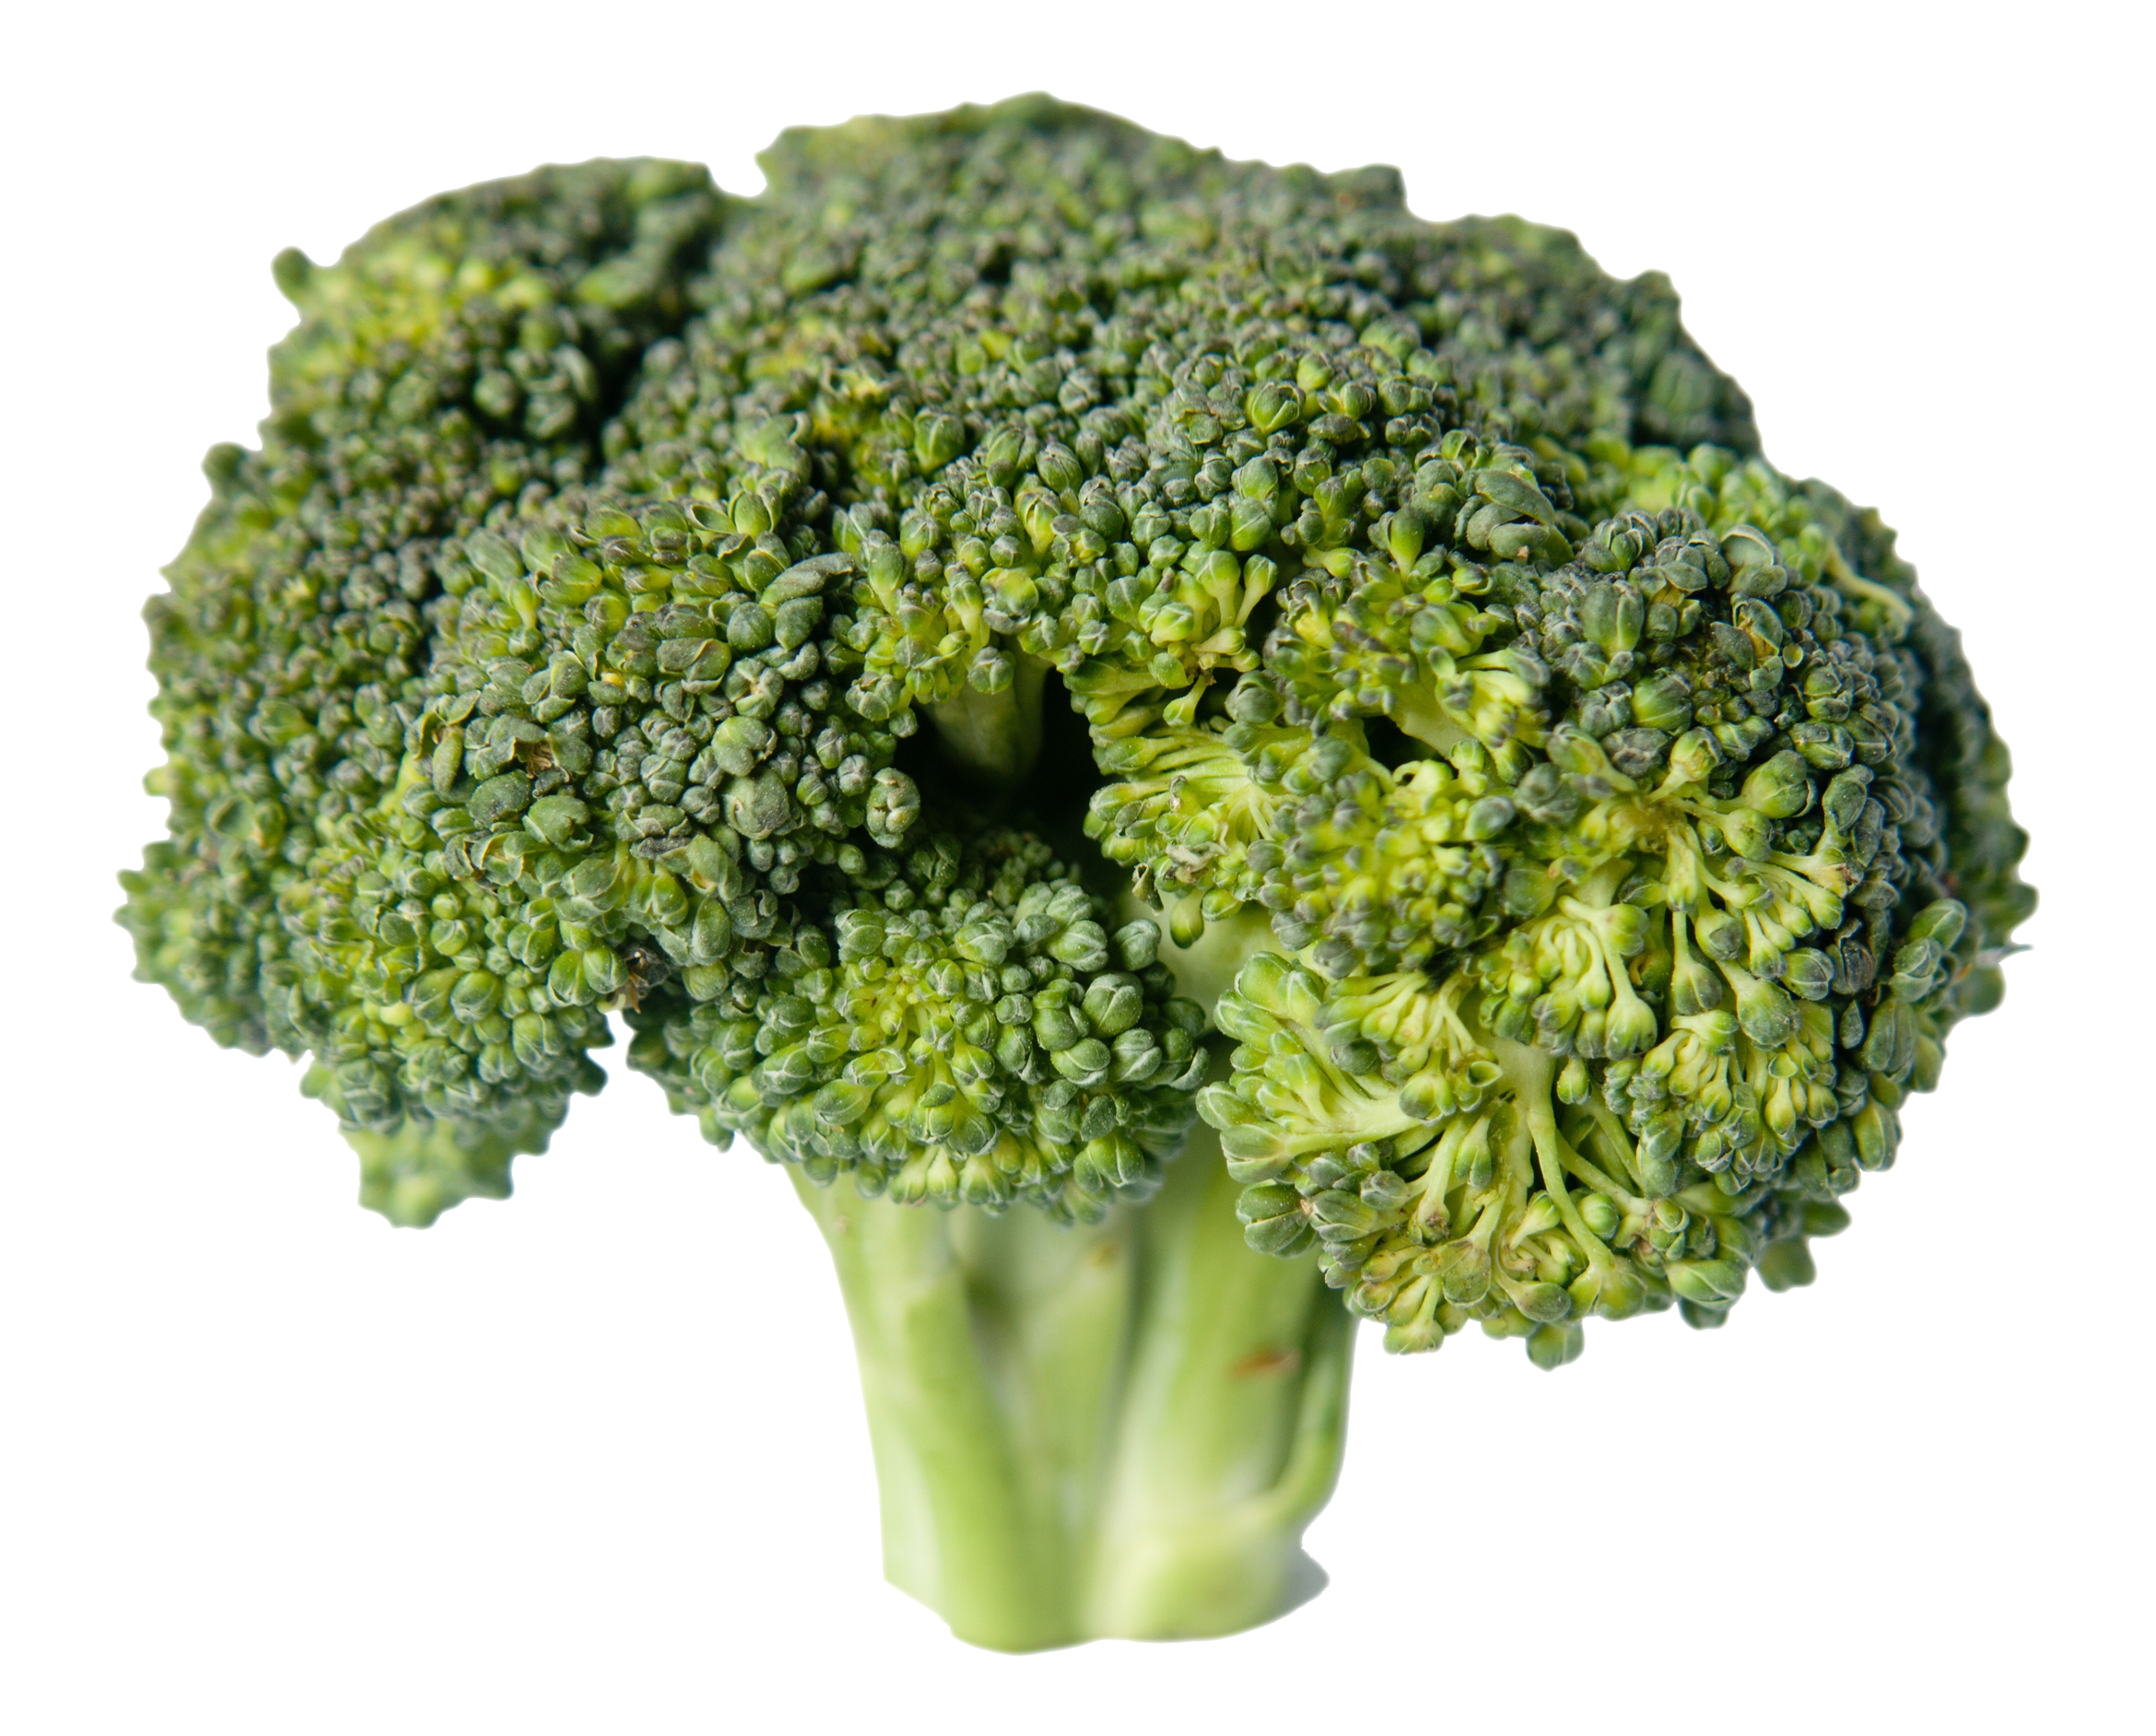 A Close Up Of A Broccoli Head